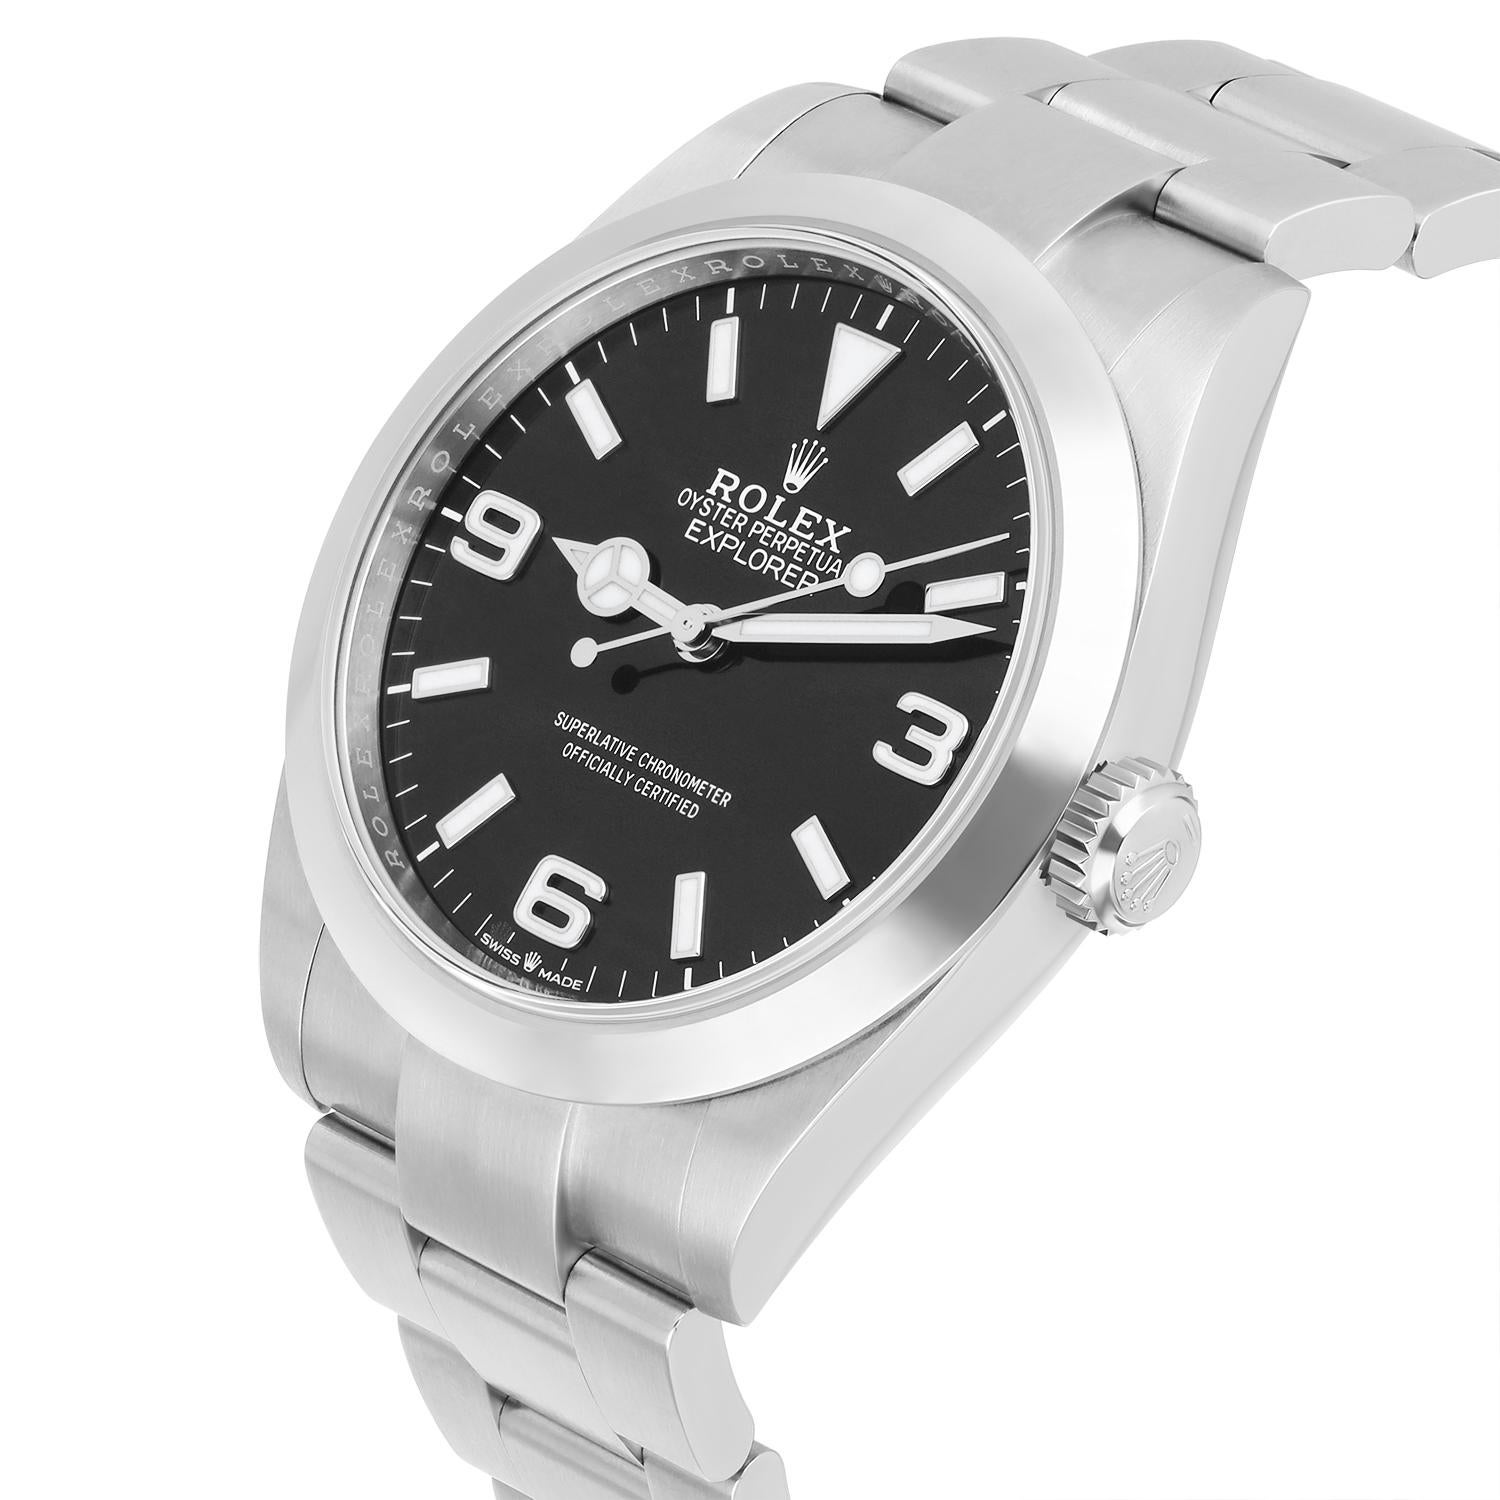 Rolex Explorer Automatic Chronometer Black Dial Men's Watch 224270 Unworn 2